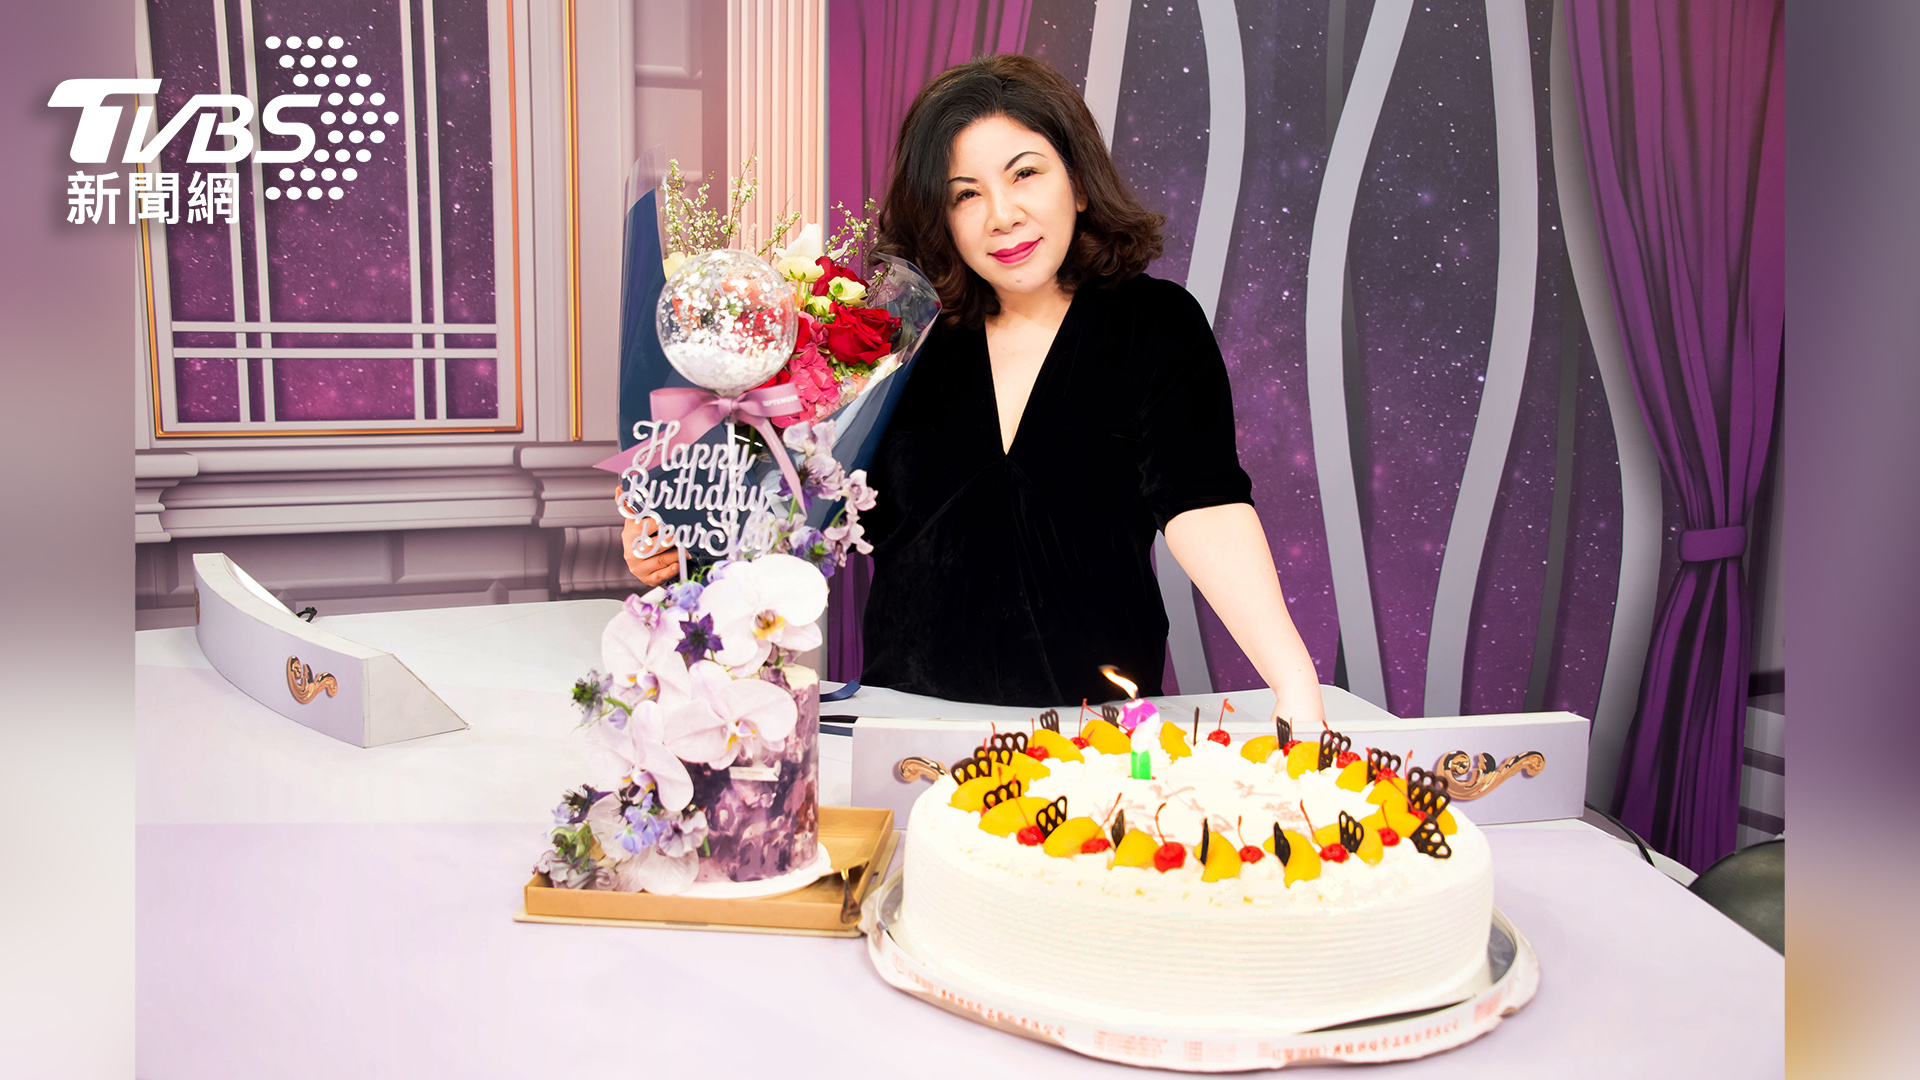 《TVBS文茜的世界周報》提前為主持人陳文茜慶祝生日